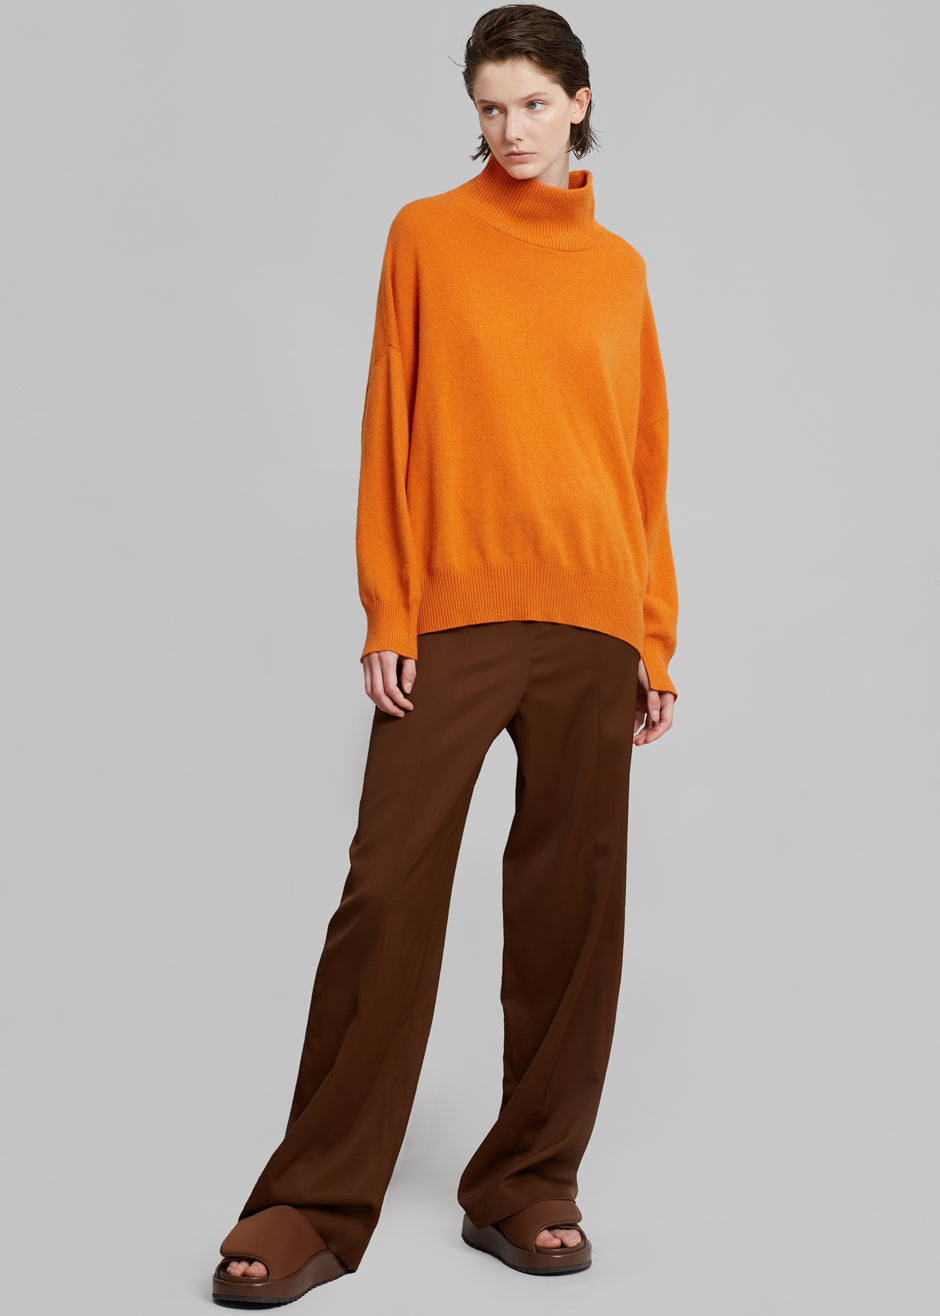 Loulou Studio Murano Cashmere Sweater - Orange - 2